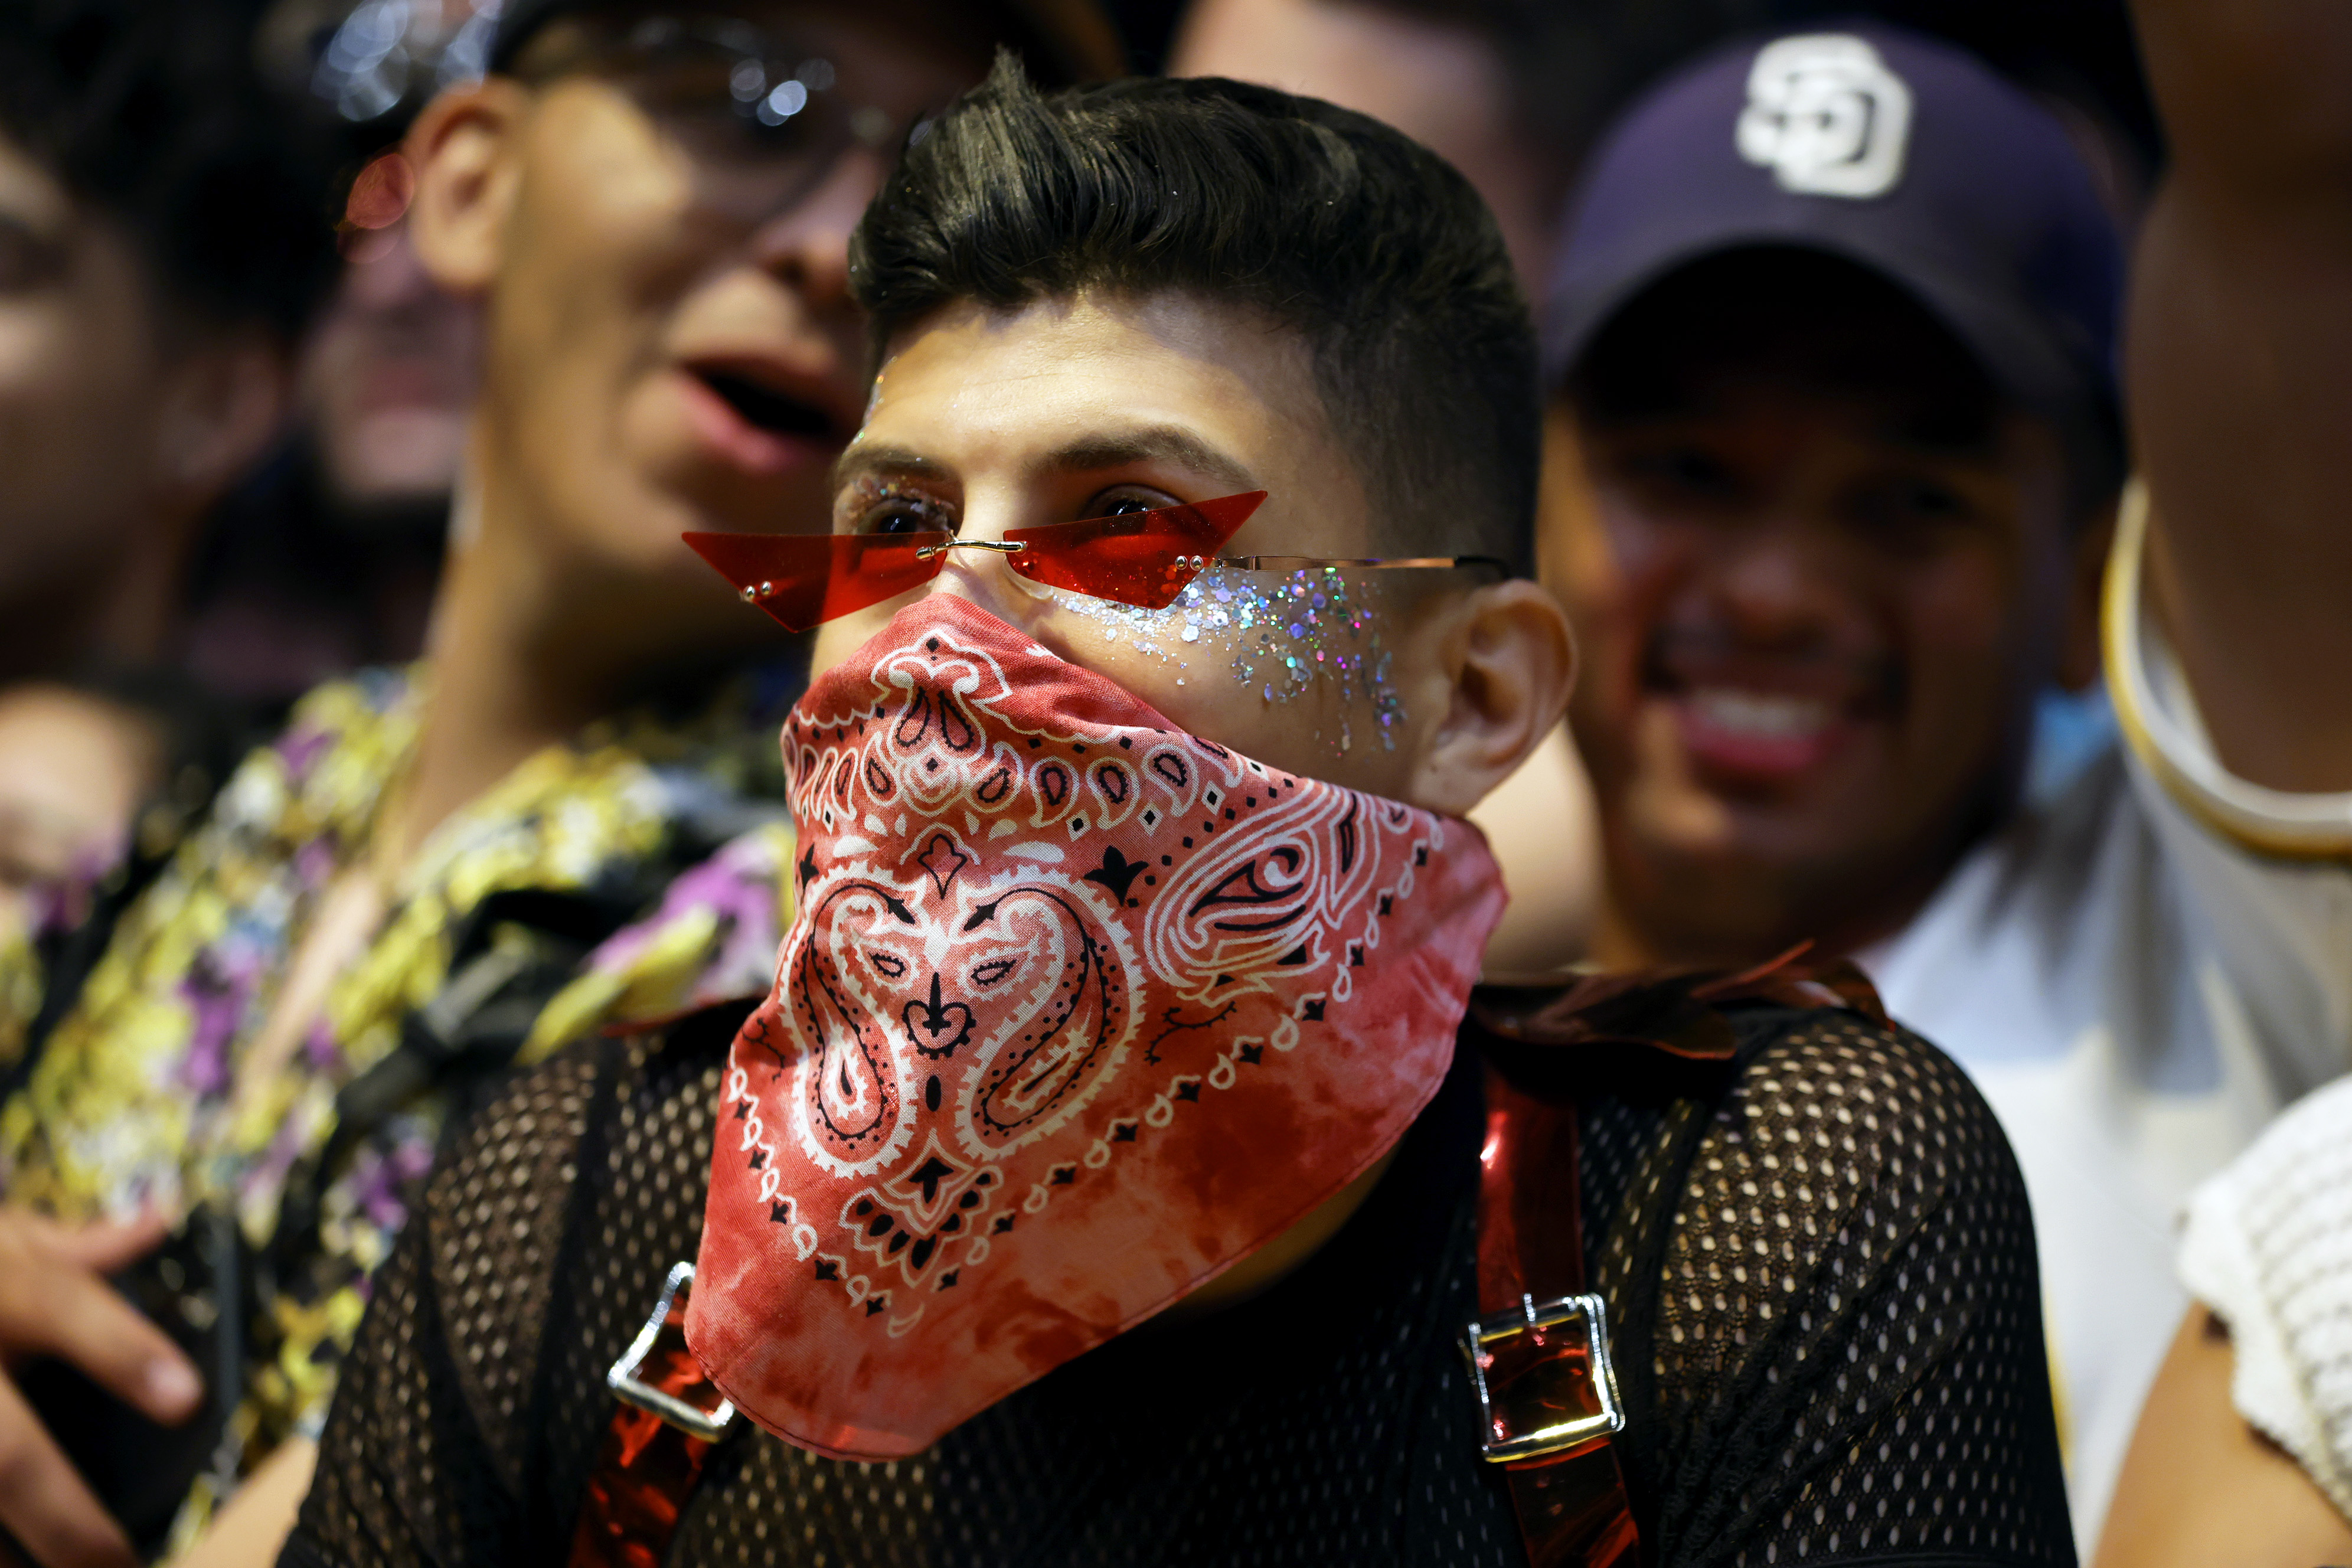 El público disfruta de Big Sean con máscaras improvisadas durante el Festival Coachella 2022 (Photo by Frazer Harrison/Getty Images for Coachella)